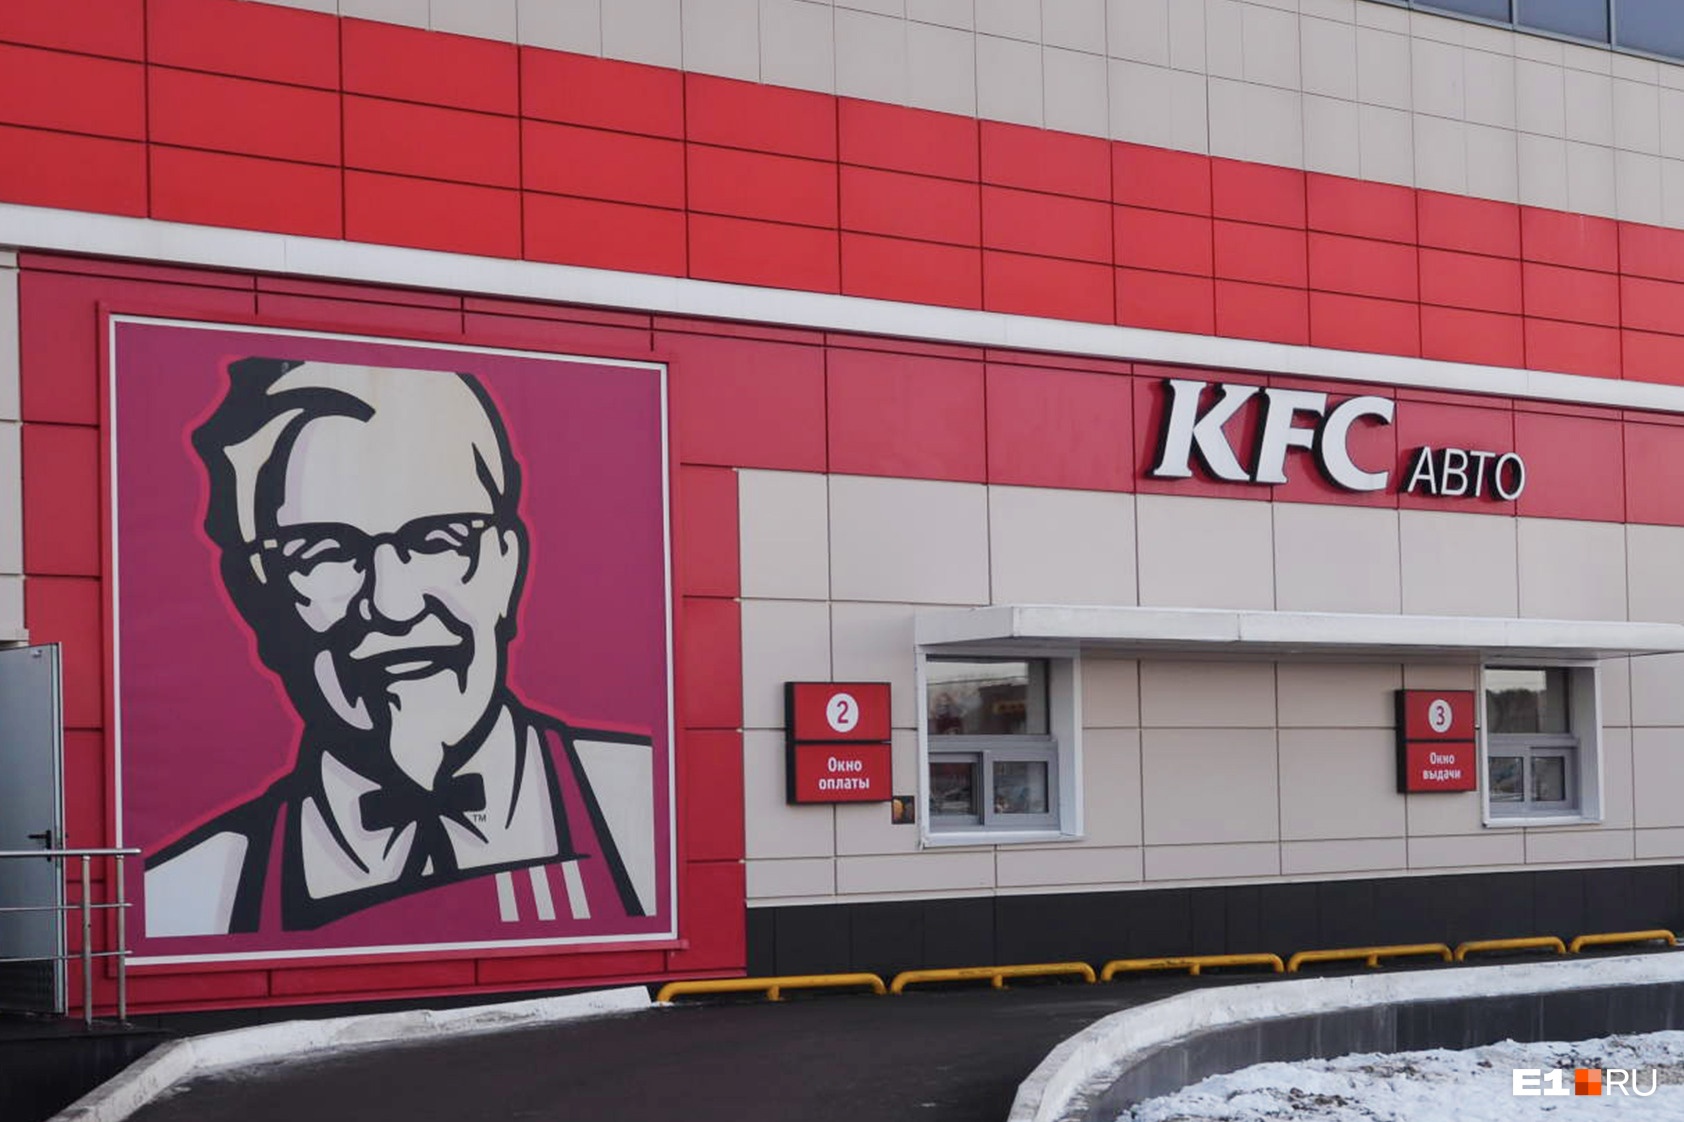 Цены выросли на все категории в меню KFC